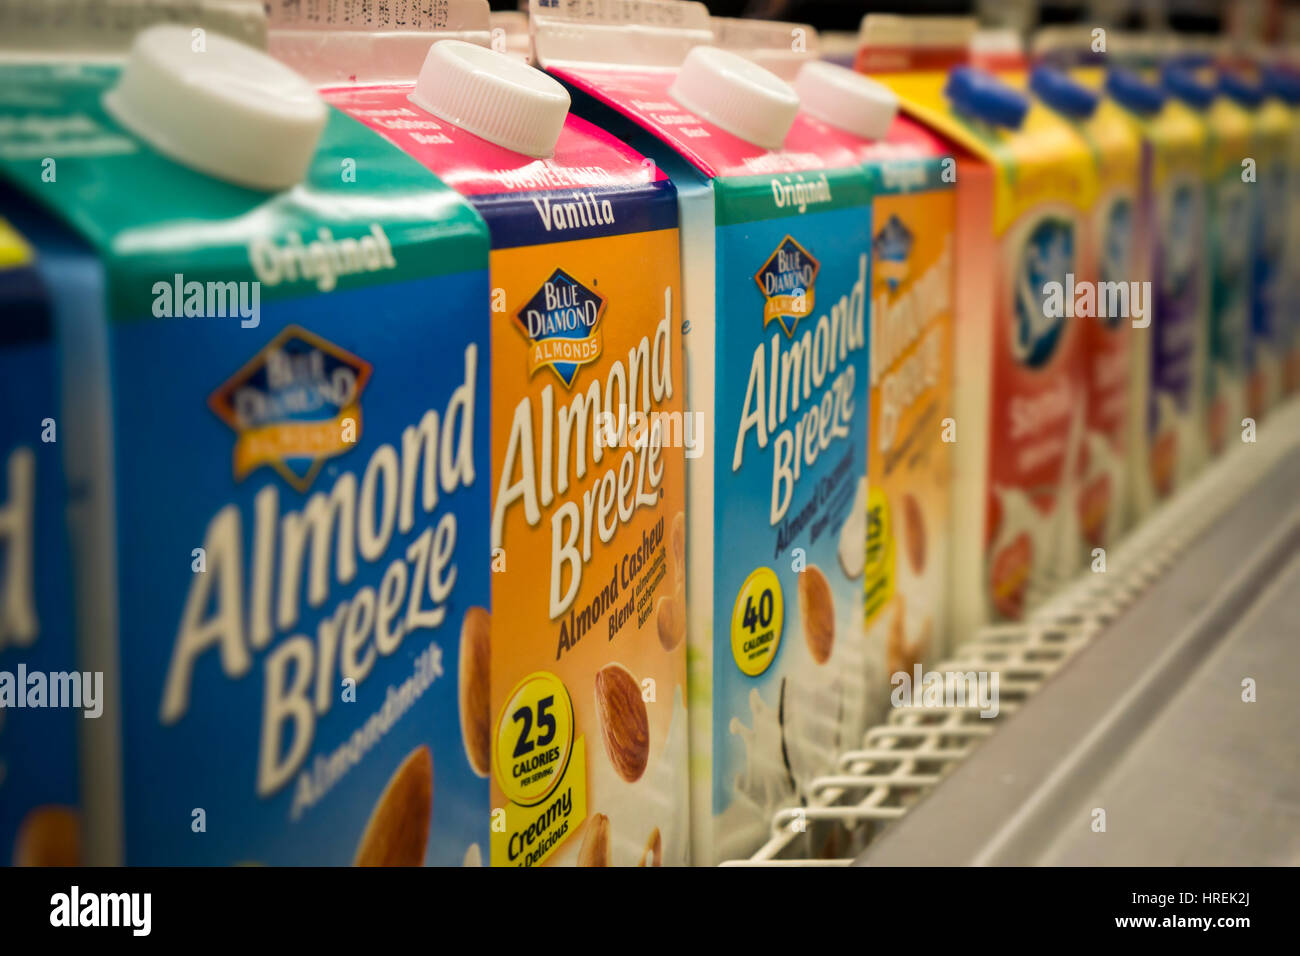 Contenedores de diamante azul la almendra almendra marca Breeze 'milk' son  vistos en un supermercado en Nueva York el jueves, 23 de febrero de 2017.  (© Richard B. Levine Fotografía de stock - Alamy